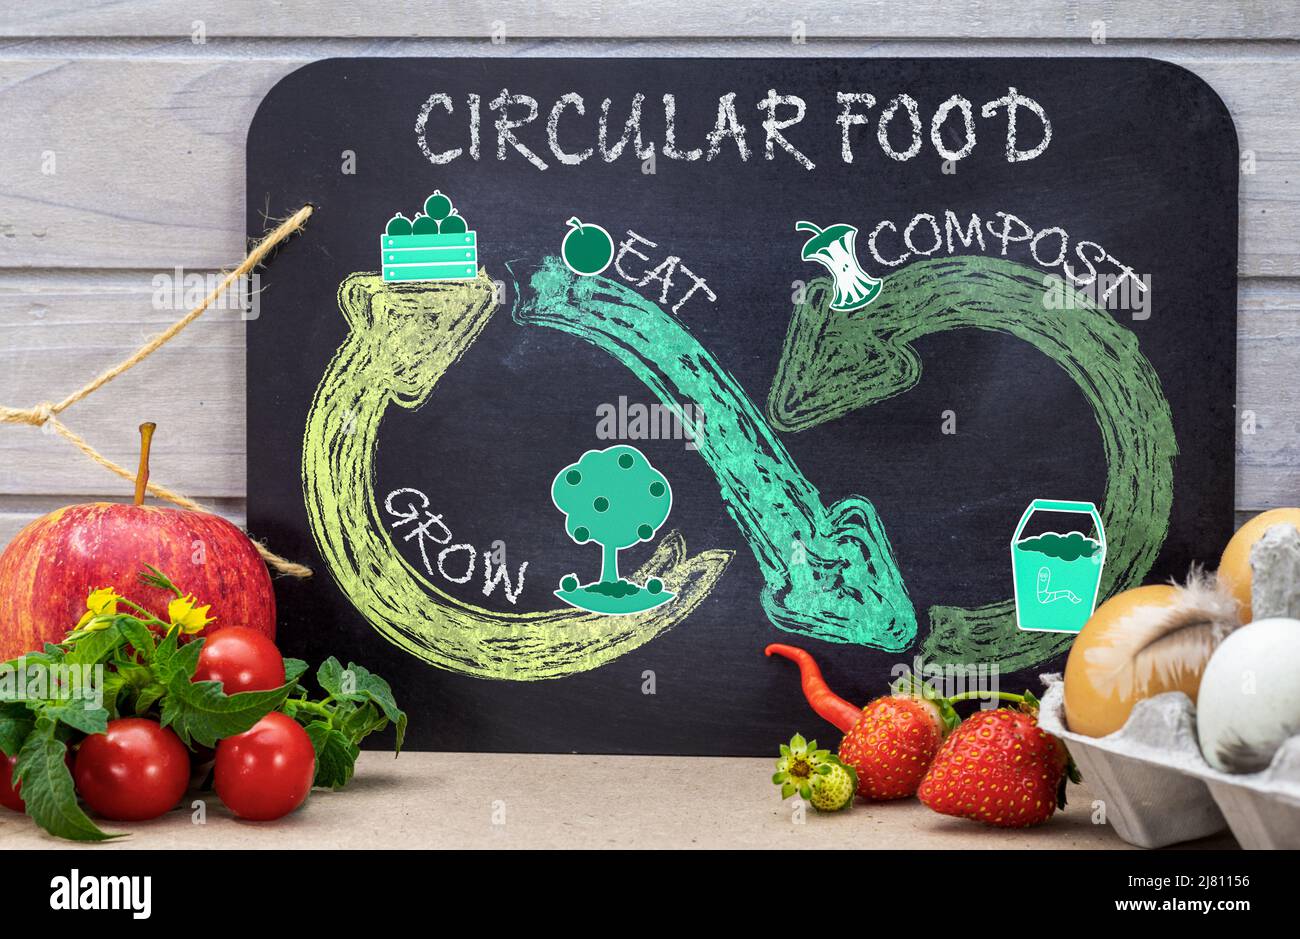 Ciclo circular de alimentos en pizarra con pegatinas y dibujo de tiza, reducir el desperdicio de alimentos, crecer, comer, compost para el consumo sostenible de alimentos. Foto de stock